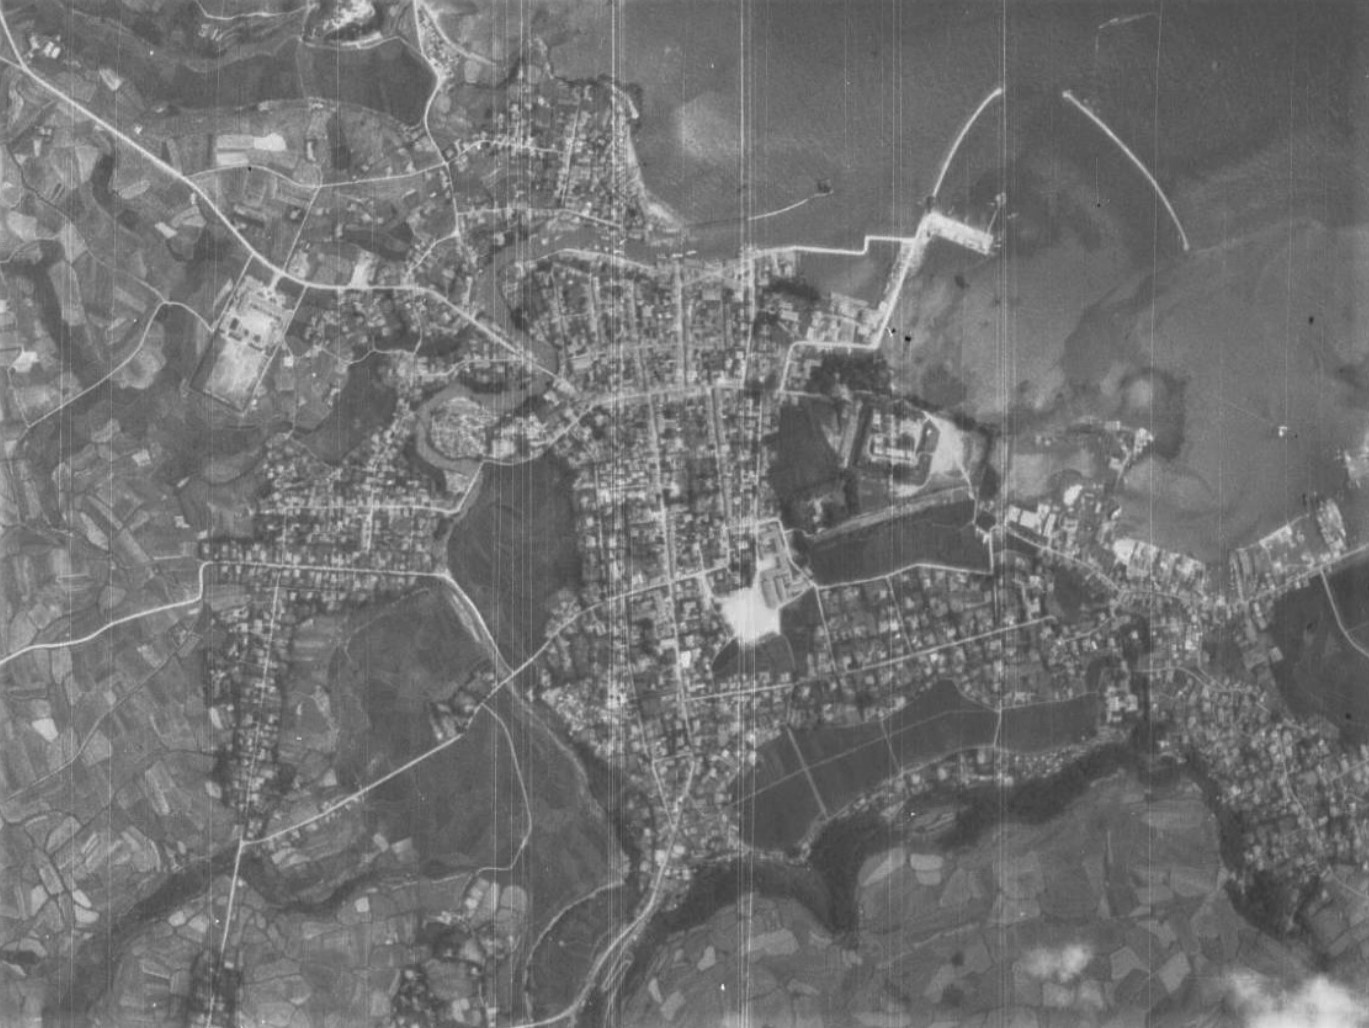 福江市街地、昭和22年撮影空中写真（国土地理院Webサイトより、USA-M415-2-83〔部分〕） の画像。